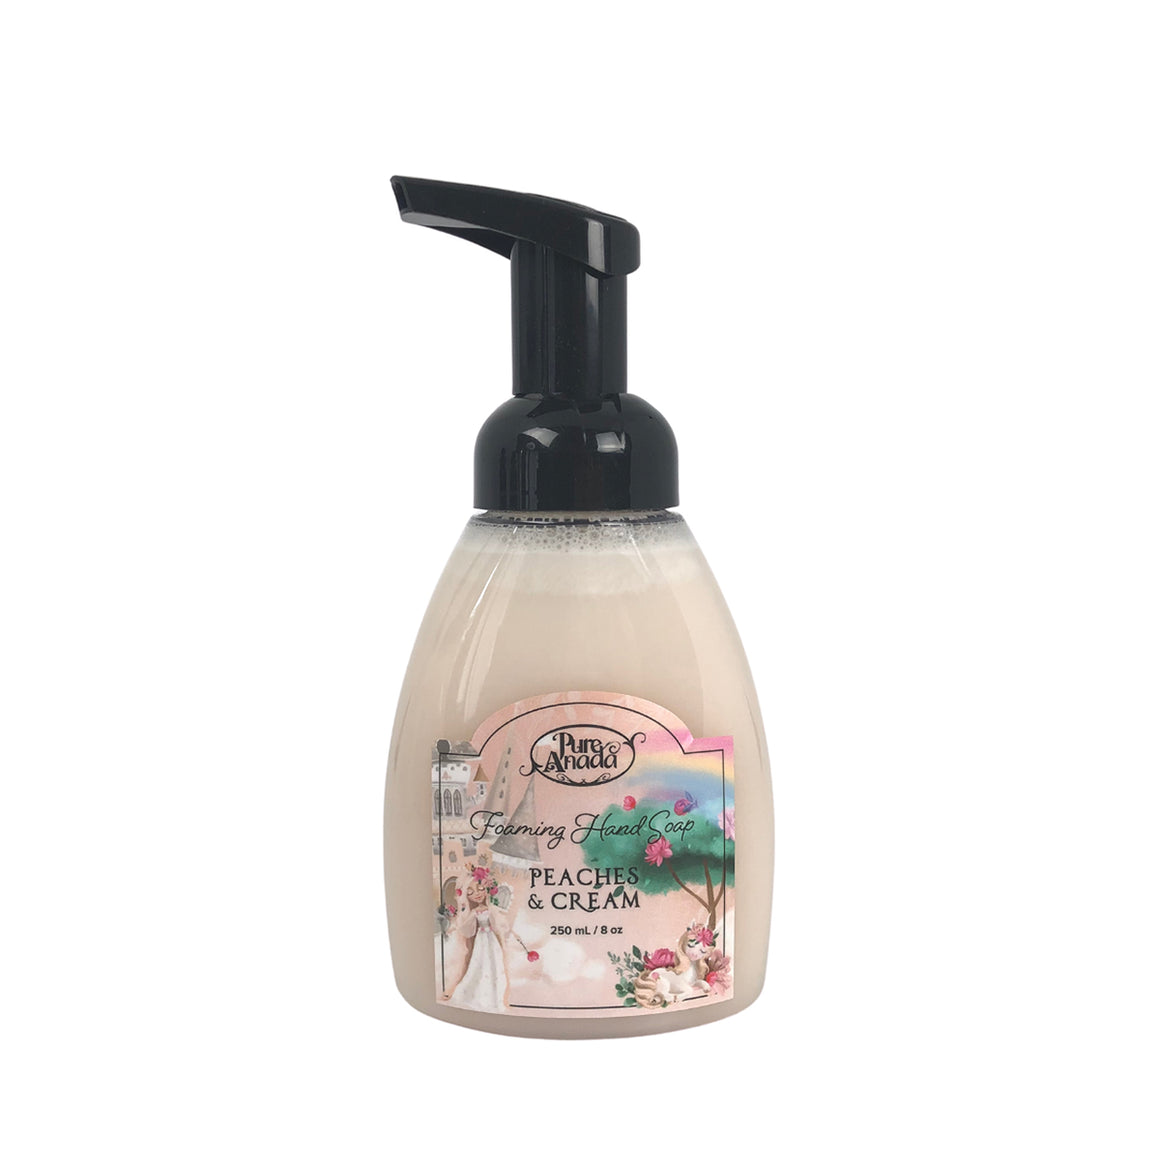 Peaches & Cream Natural Foaming Hand Soap - Pure Anada 250ml